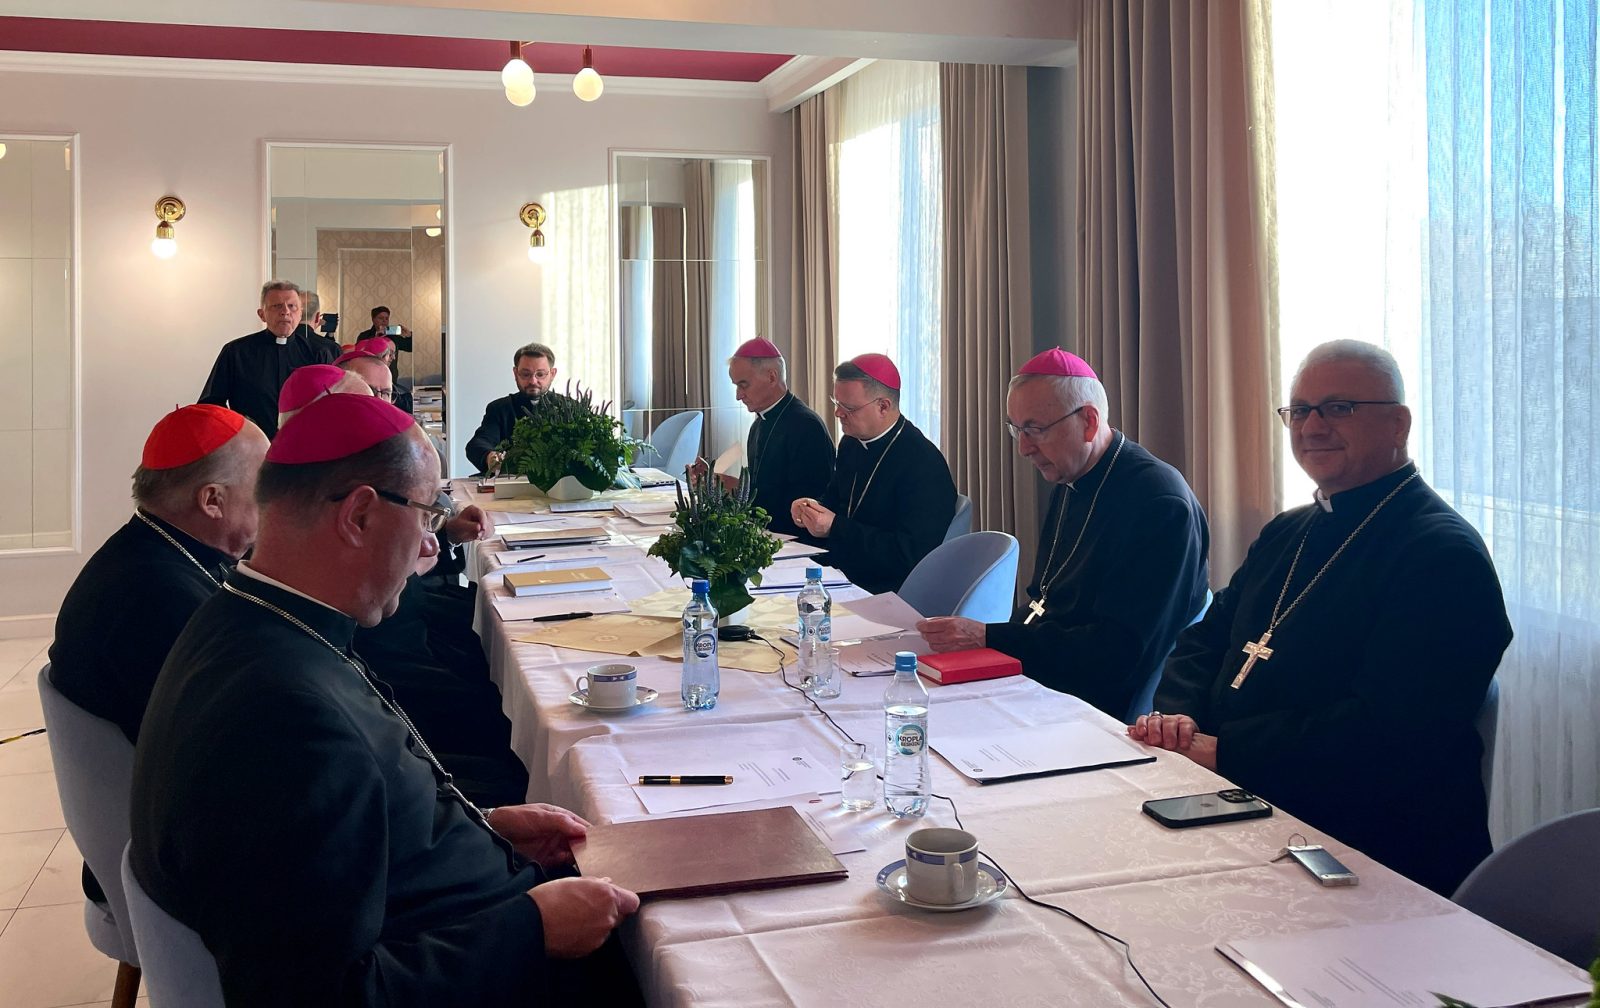 Le Conseil permanent de l’épiscopat polonais s’est réuni aujourd’hui à Jasna Góra.  Nous savons de quoi discuteront les évêques